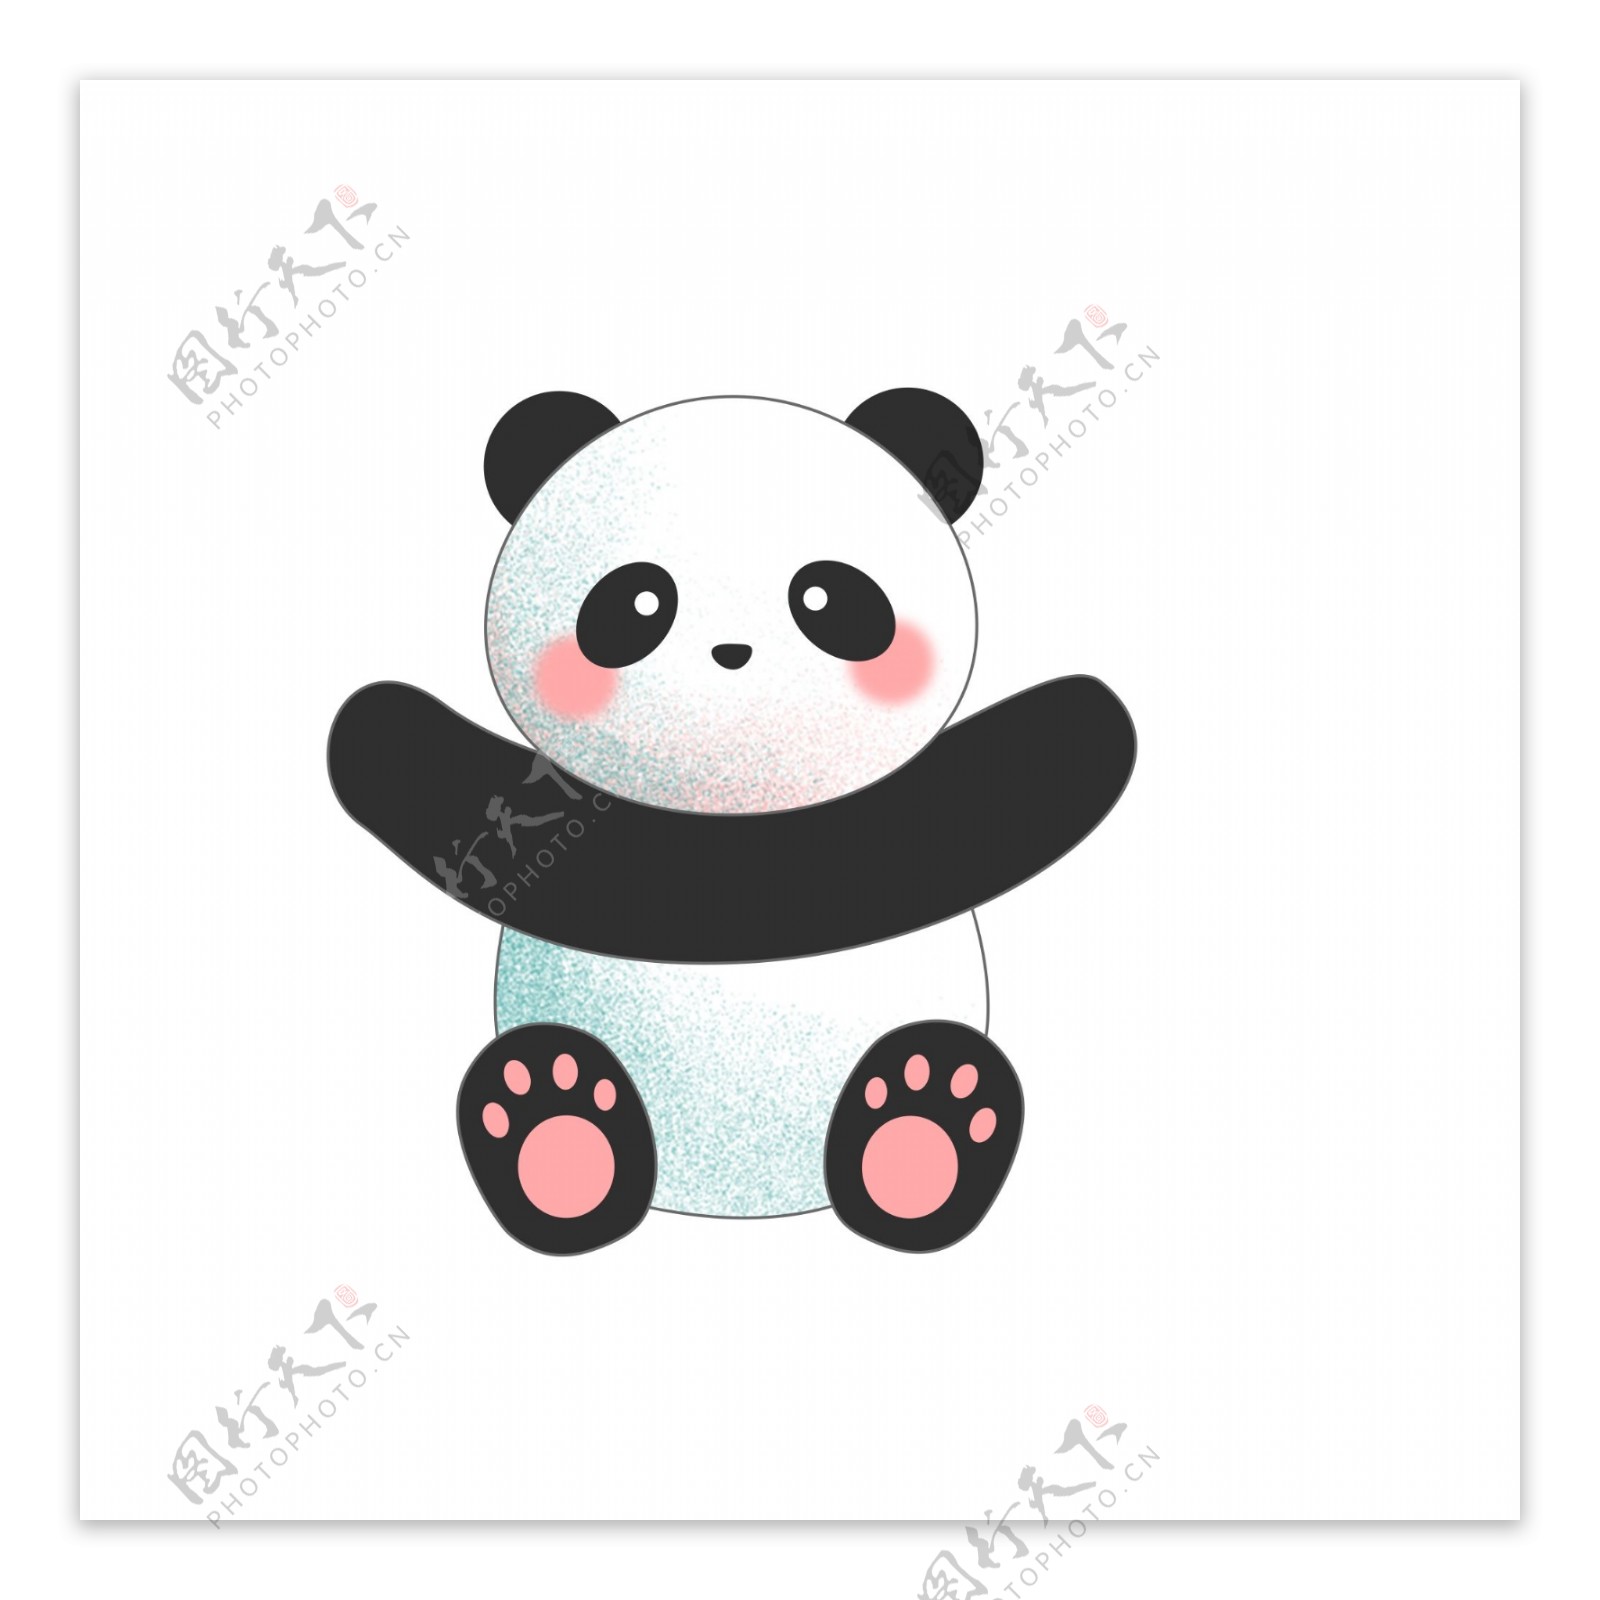 彩绘大熊猫图案元素